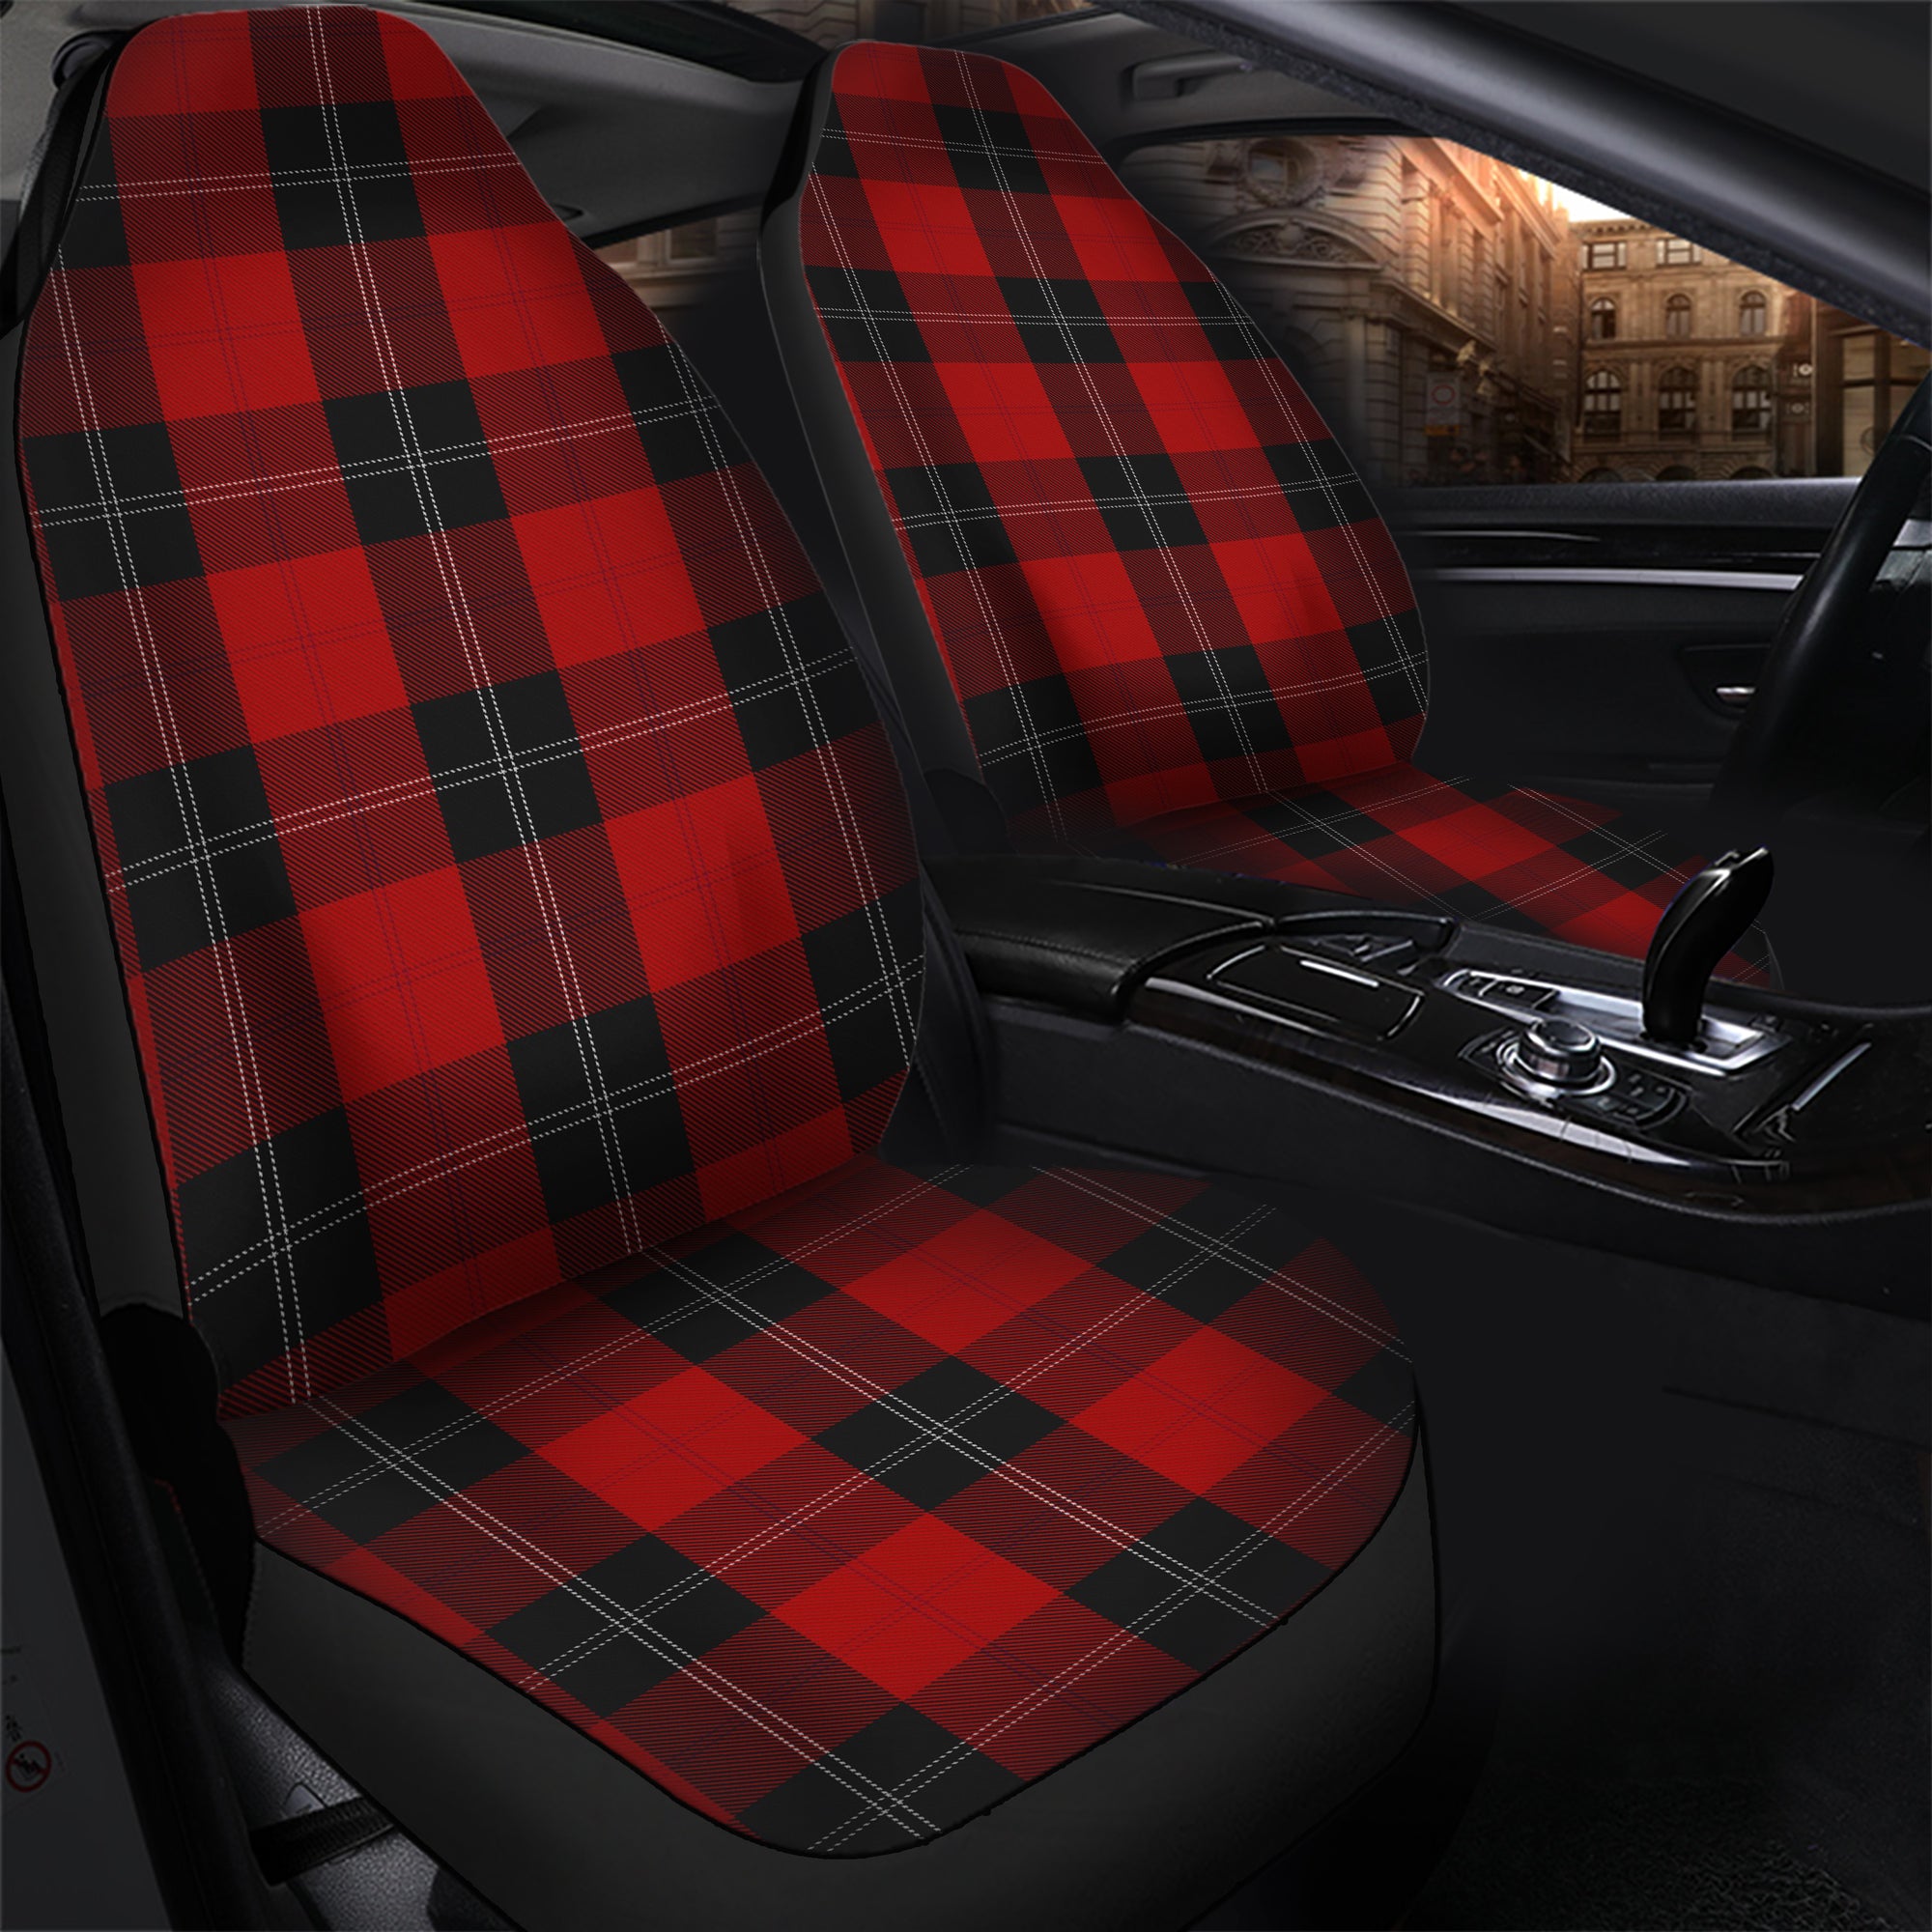 scottish-ramsay-red-clan-tartan-car-seat-cover